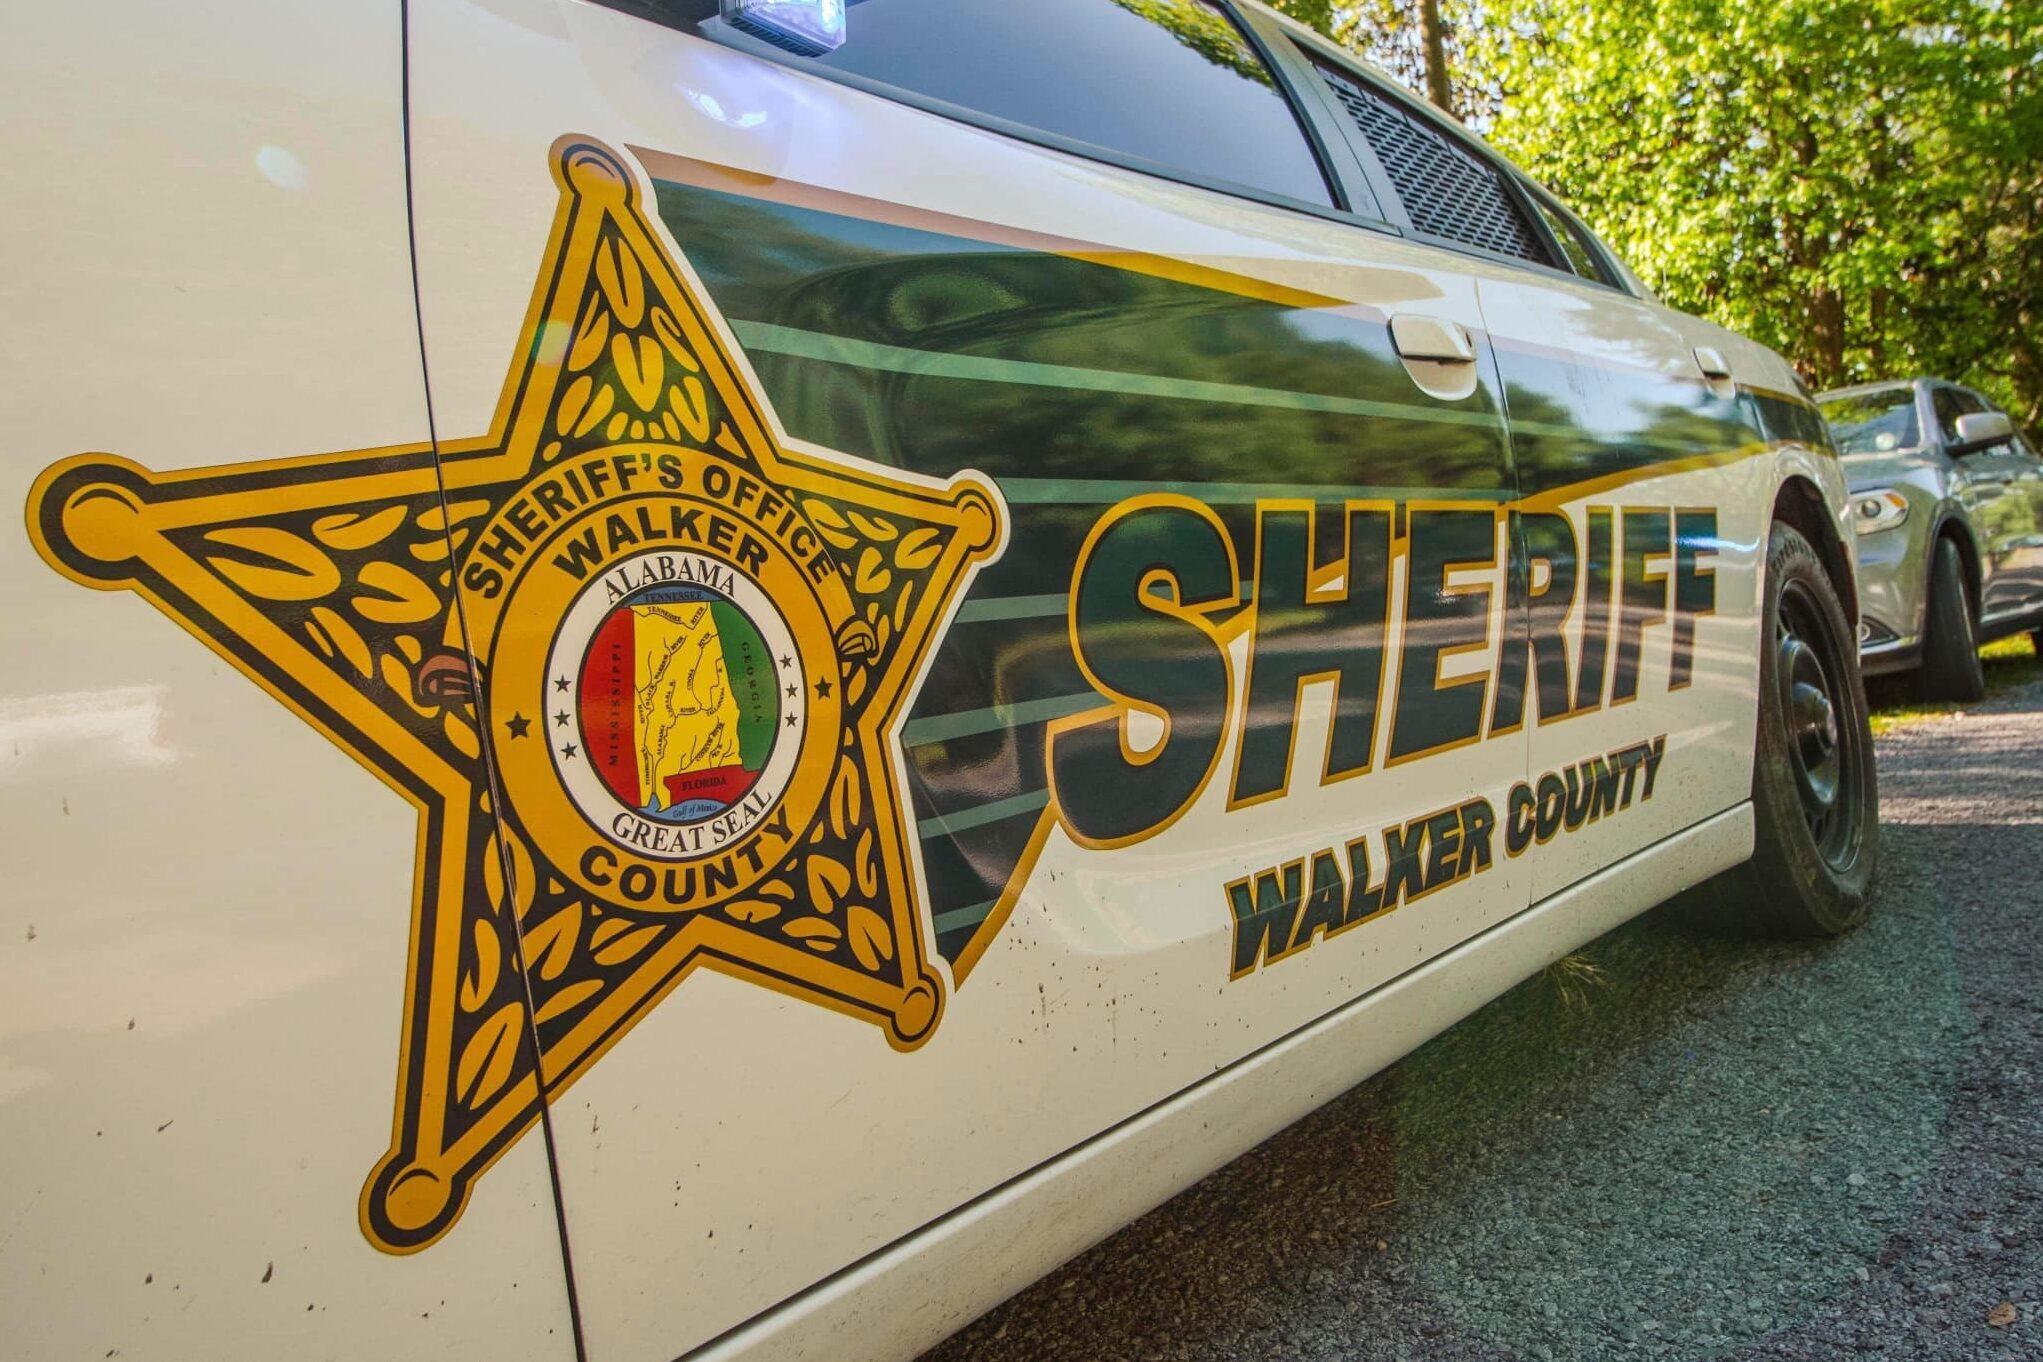 Walker County Sheriff Office